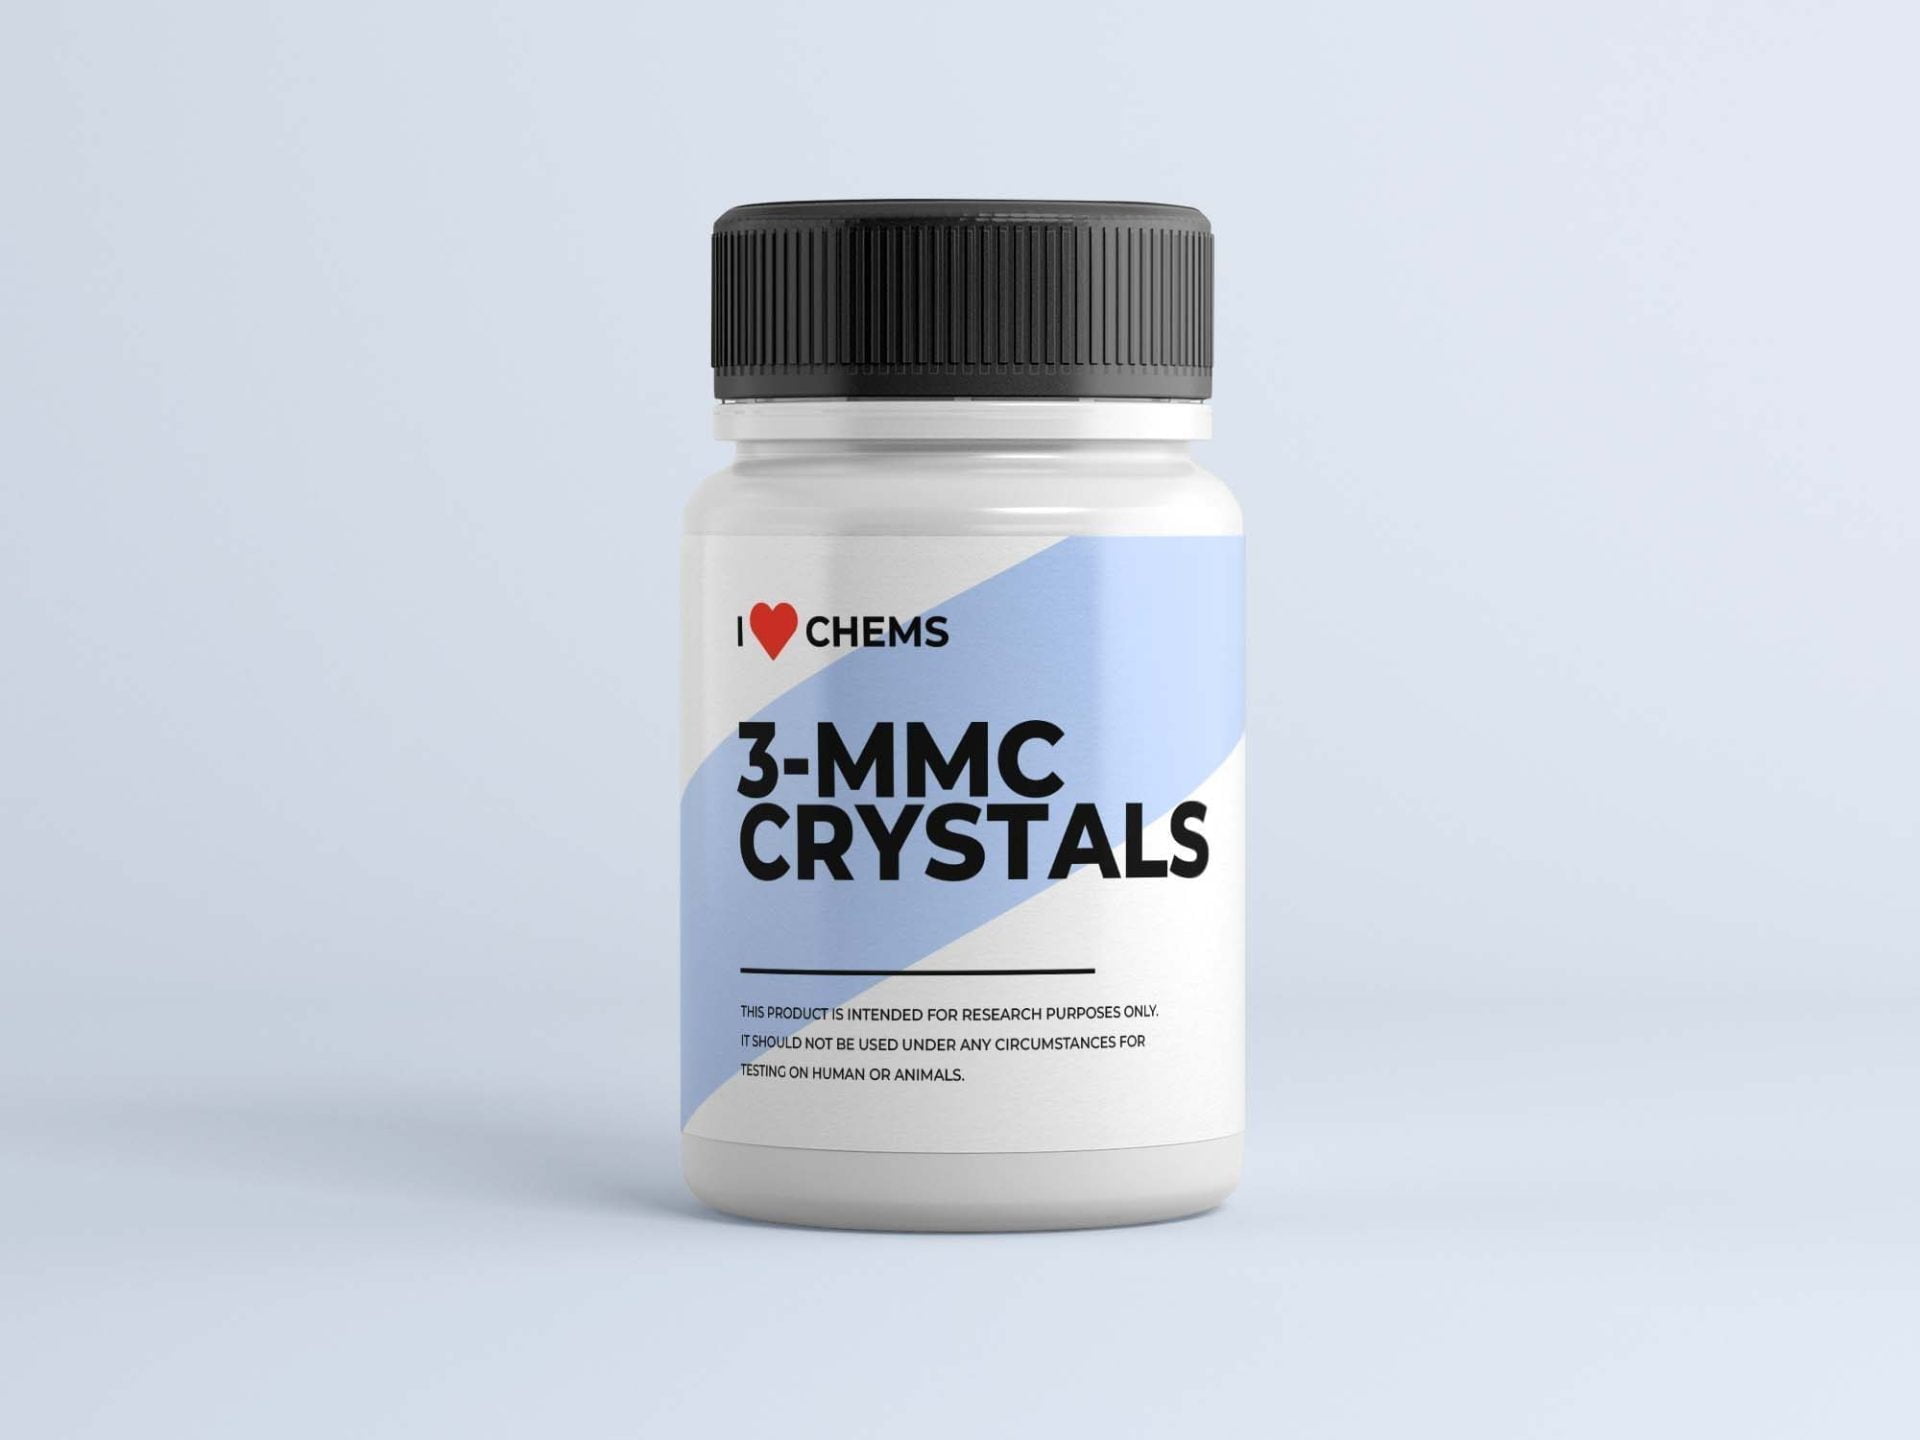 Kaufen Sie 3 MMC-Kristalle bei I Love Chems. 3 MMC-Shop in der EU. Vertrauenswürdiger RC-Anbieter